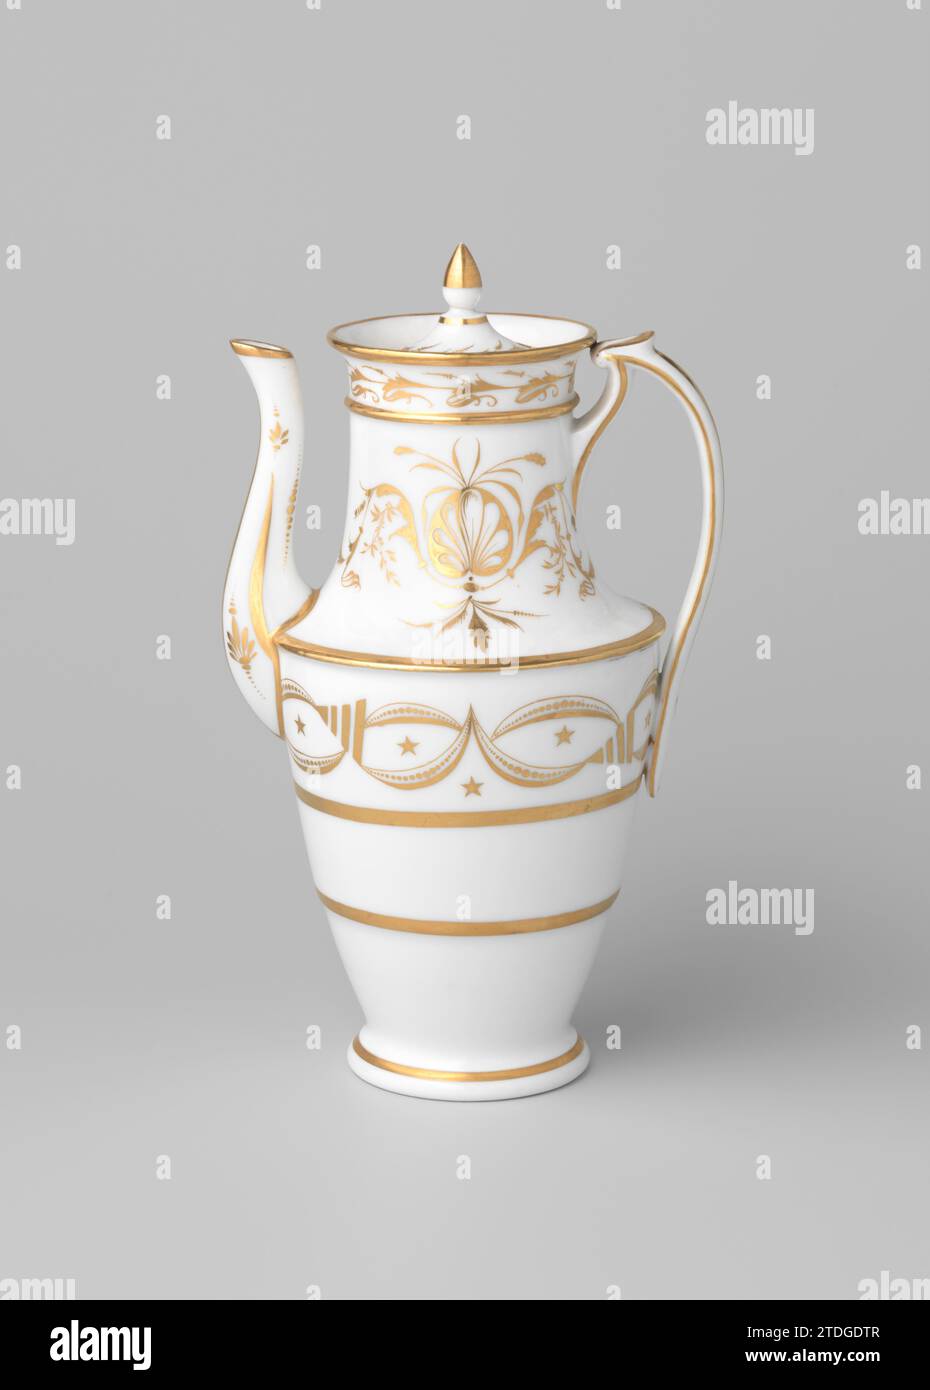 Cafetière avec sprays de fleurs stylisés et bordures ornementales, anonyme, c. 1800 - c. 1824 poêle à café en porcelaine, peinte sur la glaçure en or. La cruche a un corps en forme de vase, un bec en forme de S et une oreille haute, dont le haut est relié au bord. Le ventre est avec des lignes dorées divisées en trois pneus larges avec un pendule d'étoiles dans le haut, des formes de demi-lune avec des points et des triangles. Sur le cou deux fois une branche de fleur stylisée et sur le bord des vignes de fleurs. Le bec avec des lignes dorées et des fleurs stylisées. Le couvercle avec une fleur de pneu vignes. Empire. Porcelaine de France. glaçage. or (métal Banque D'Images